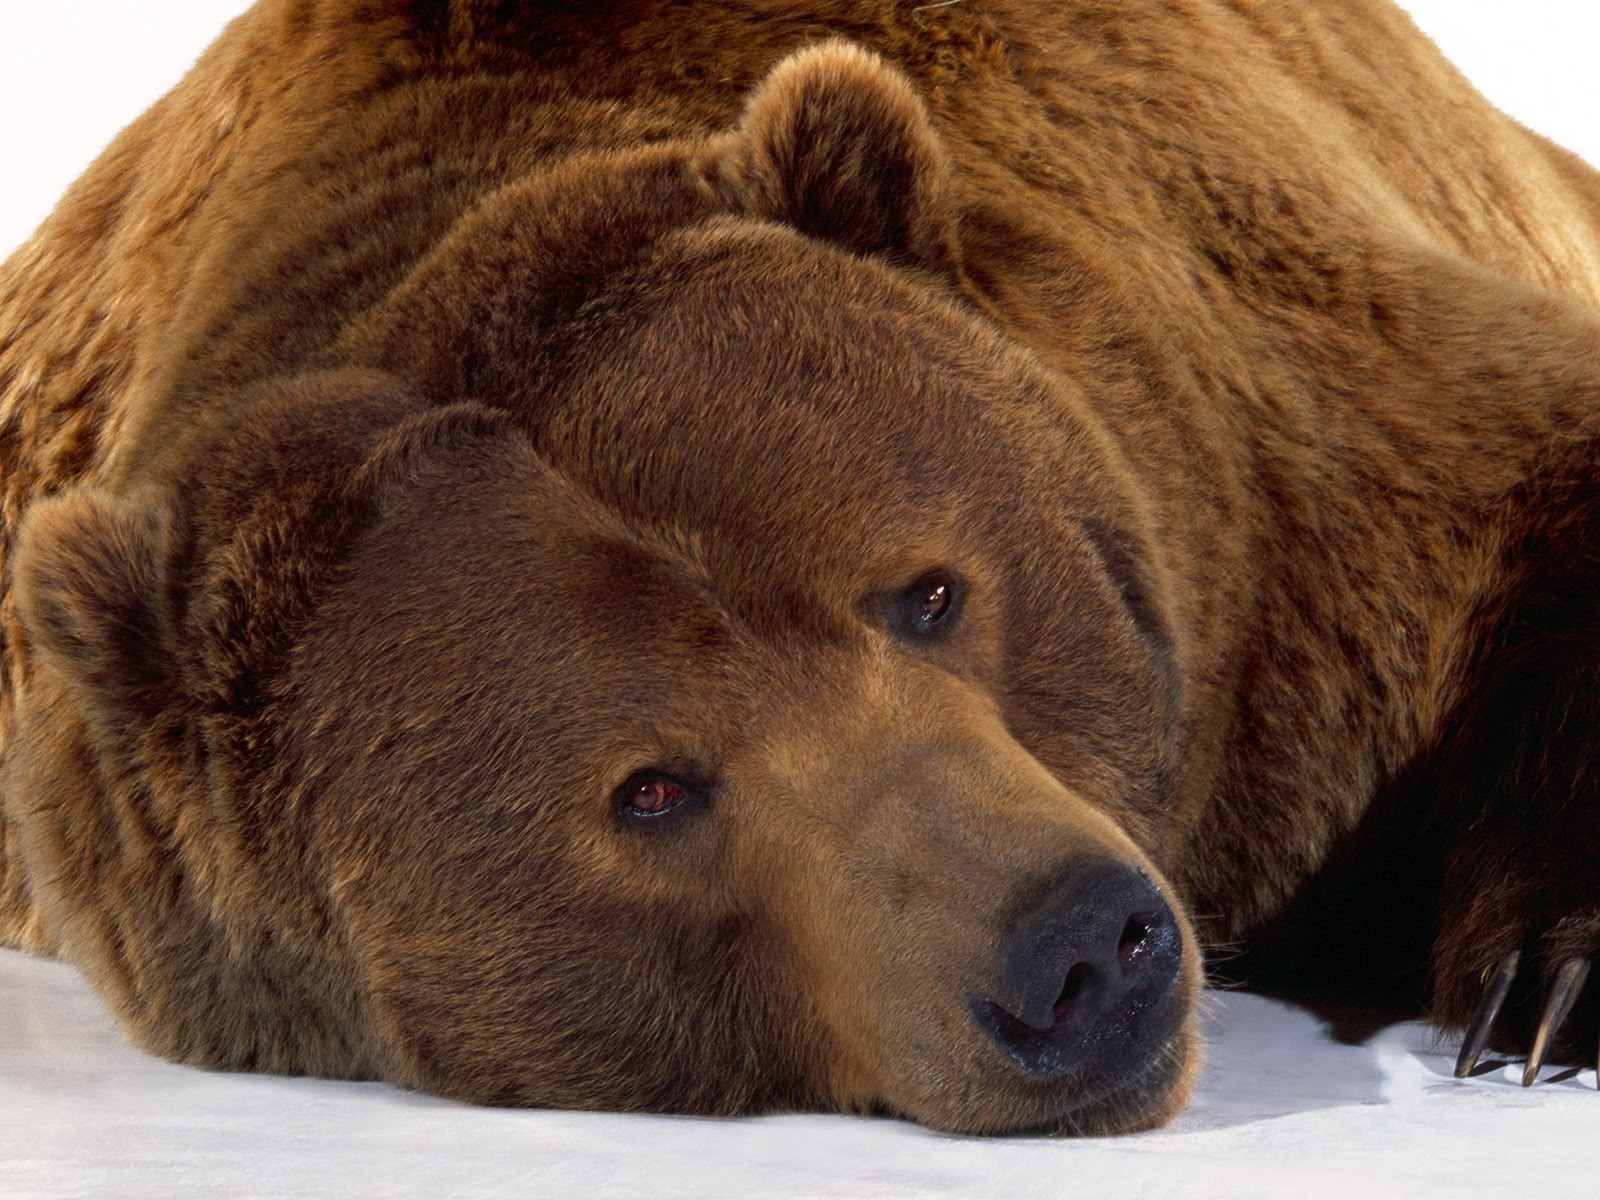 fondos de pantalla de barba hd,oso café,oso grizzly,oso,oso kodiak,animal terrestre